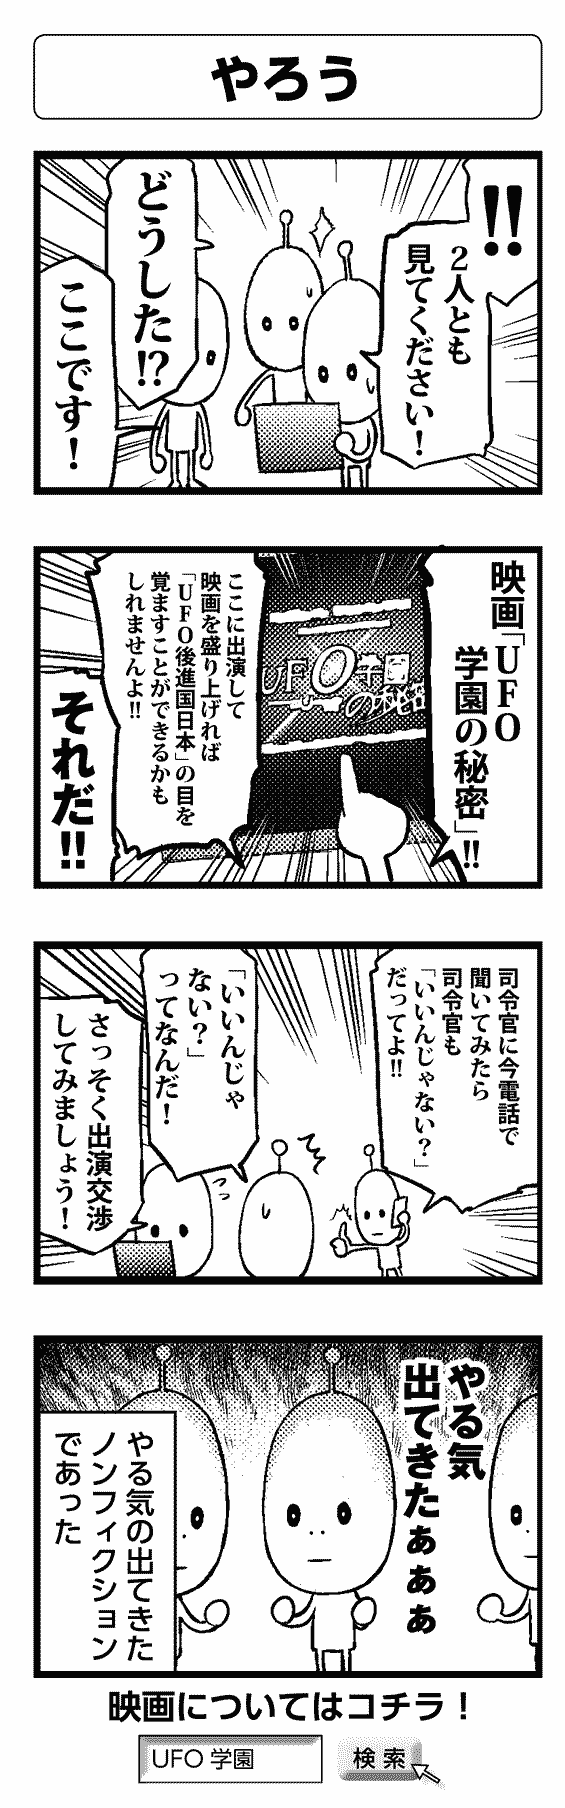 やろう - 四コマ漫画ノンフィクション #009